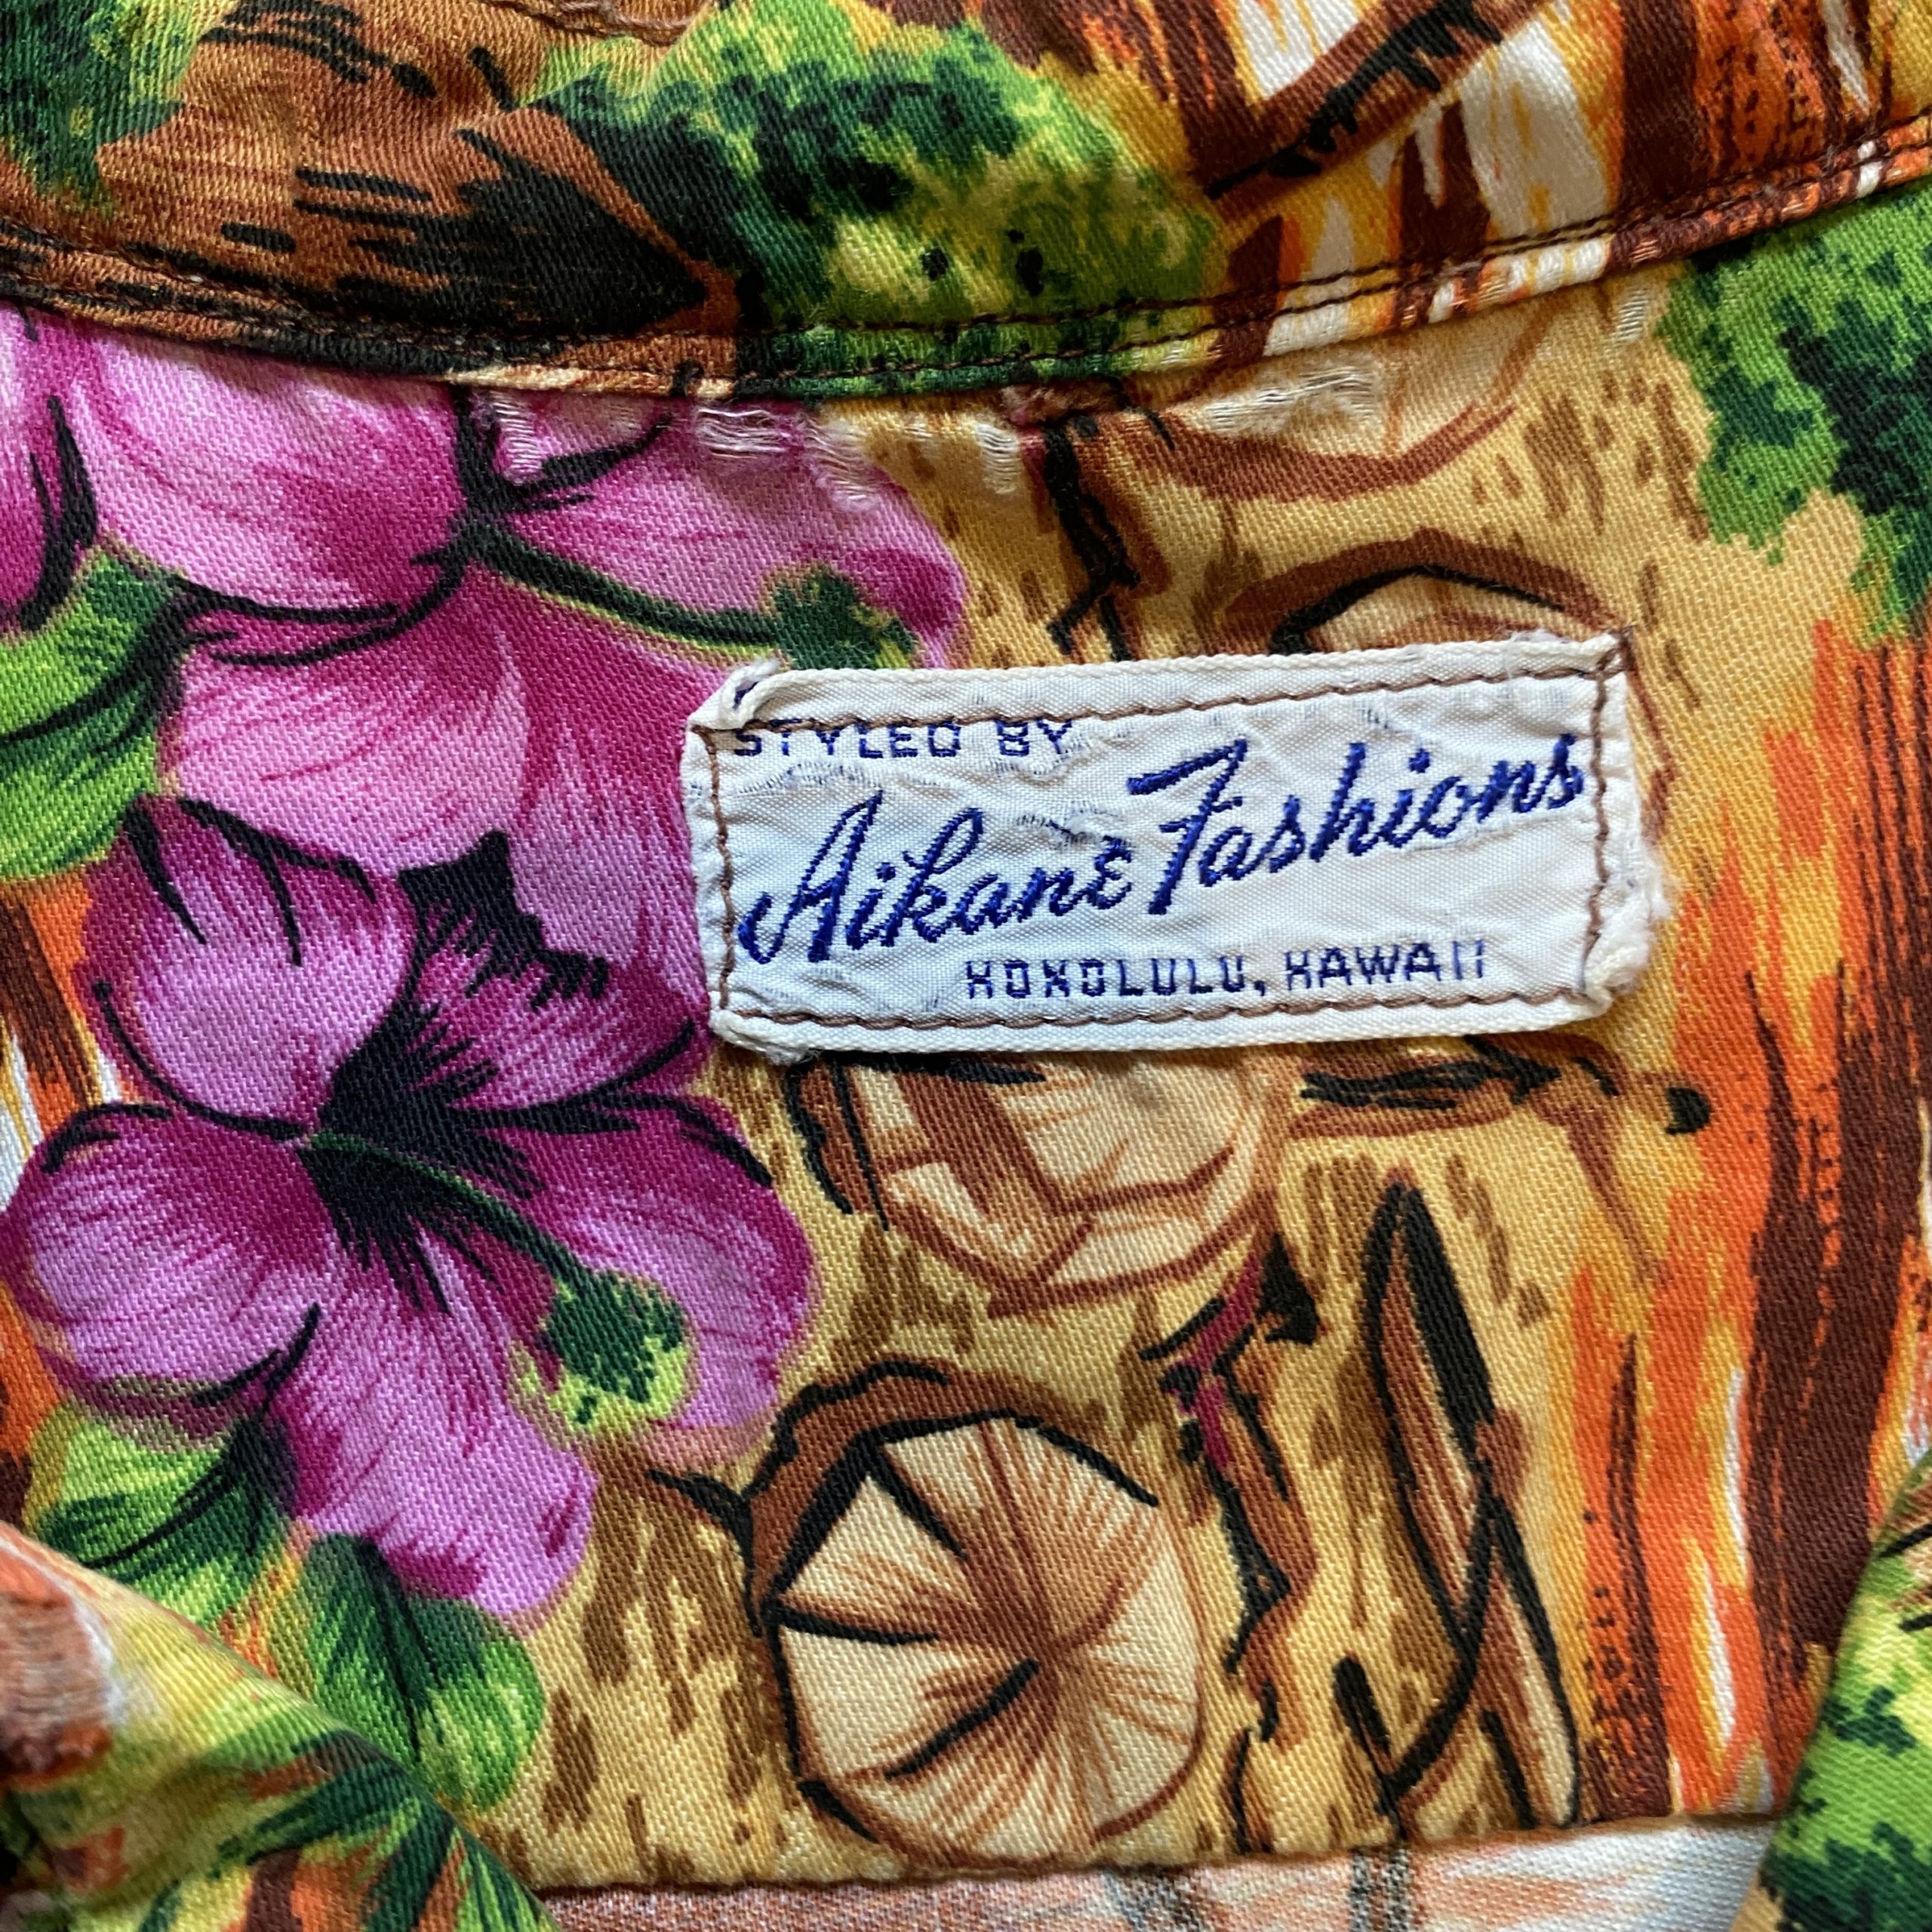 1960’s USA製ビンテージ Aikane fashions アイランド柄 総柄 古銭ボタン アロハシャツ